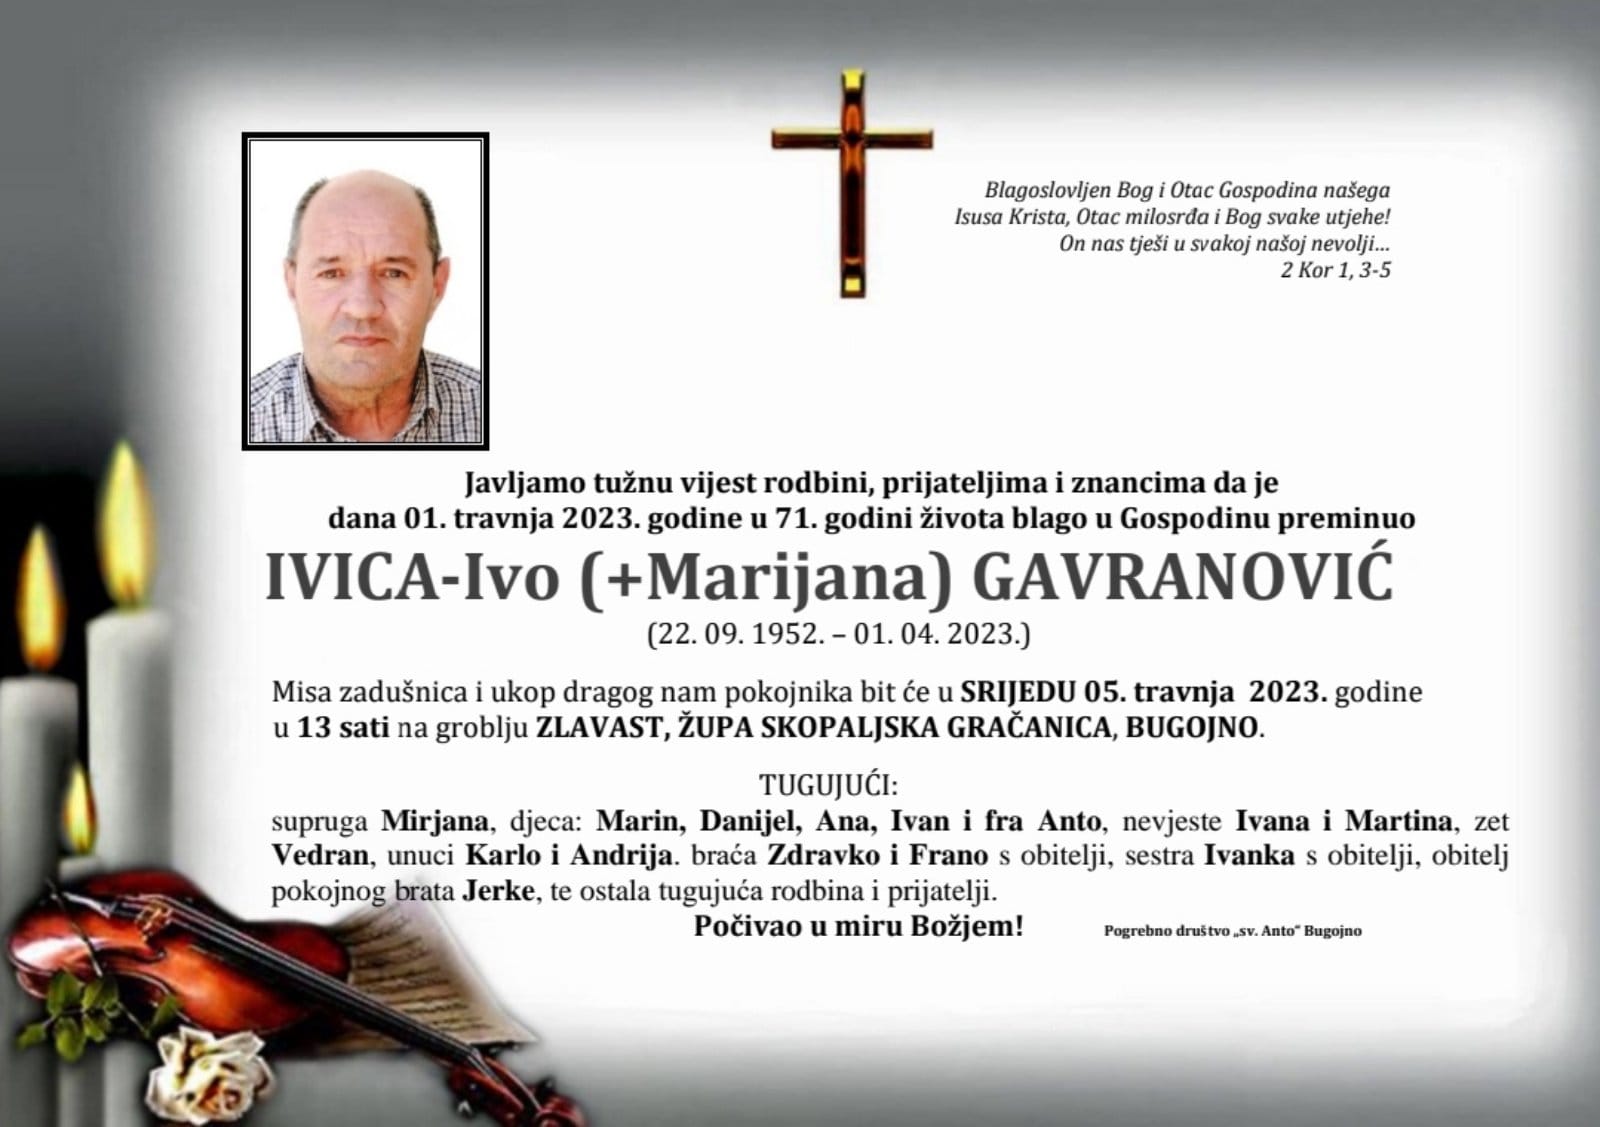 Ivica Gavranovic